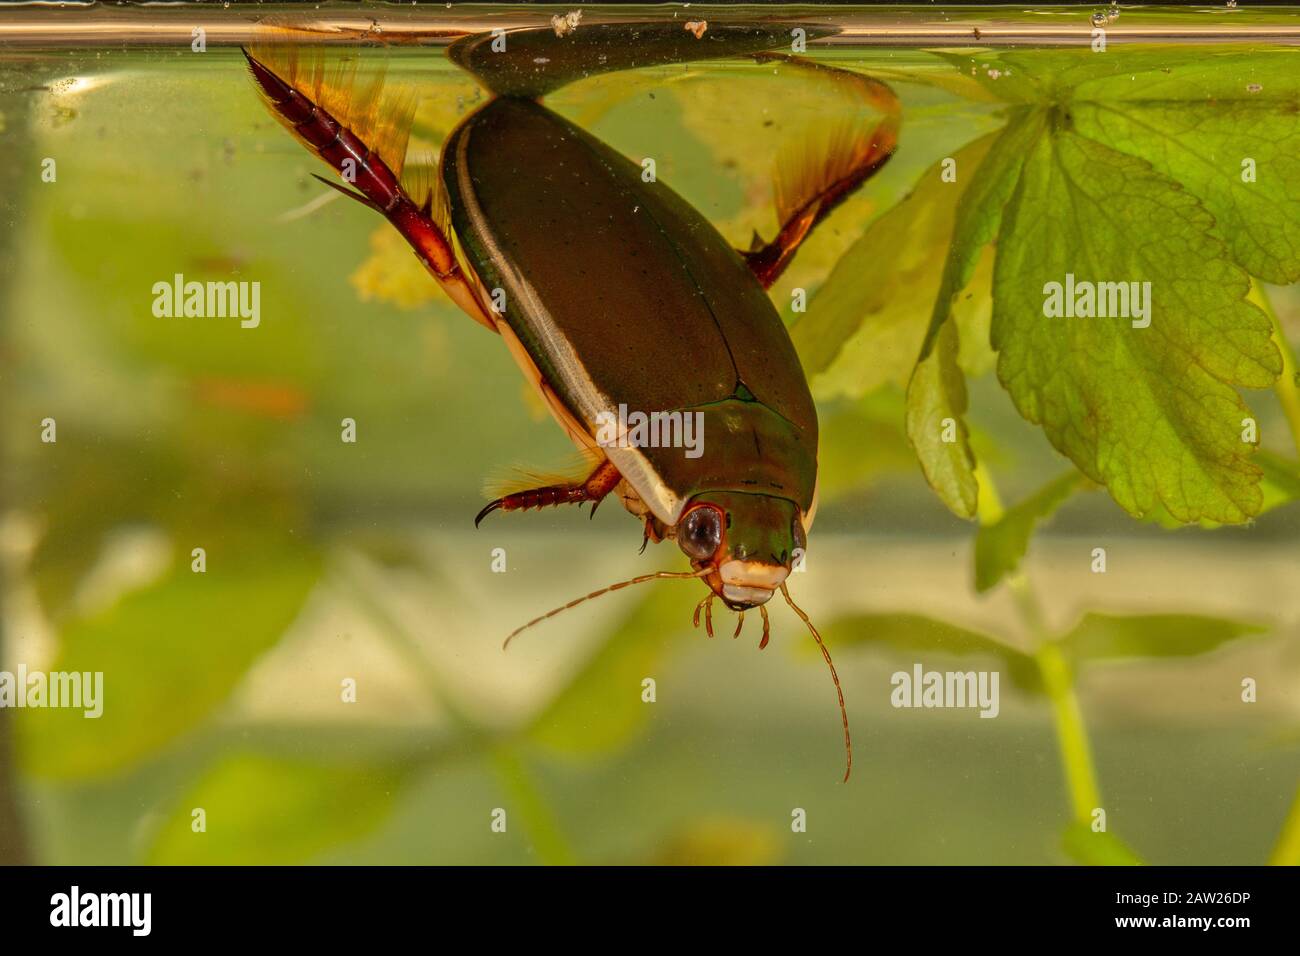 Plongée dans le Beetle (Cybister lateralimarginalis, Scaphinectes lateralimarginalis), en prenant un souffle à la surface de l'eau, Allemagne, Bavière Banque D'Images